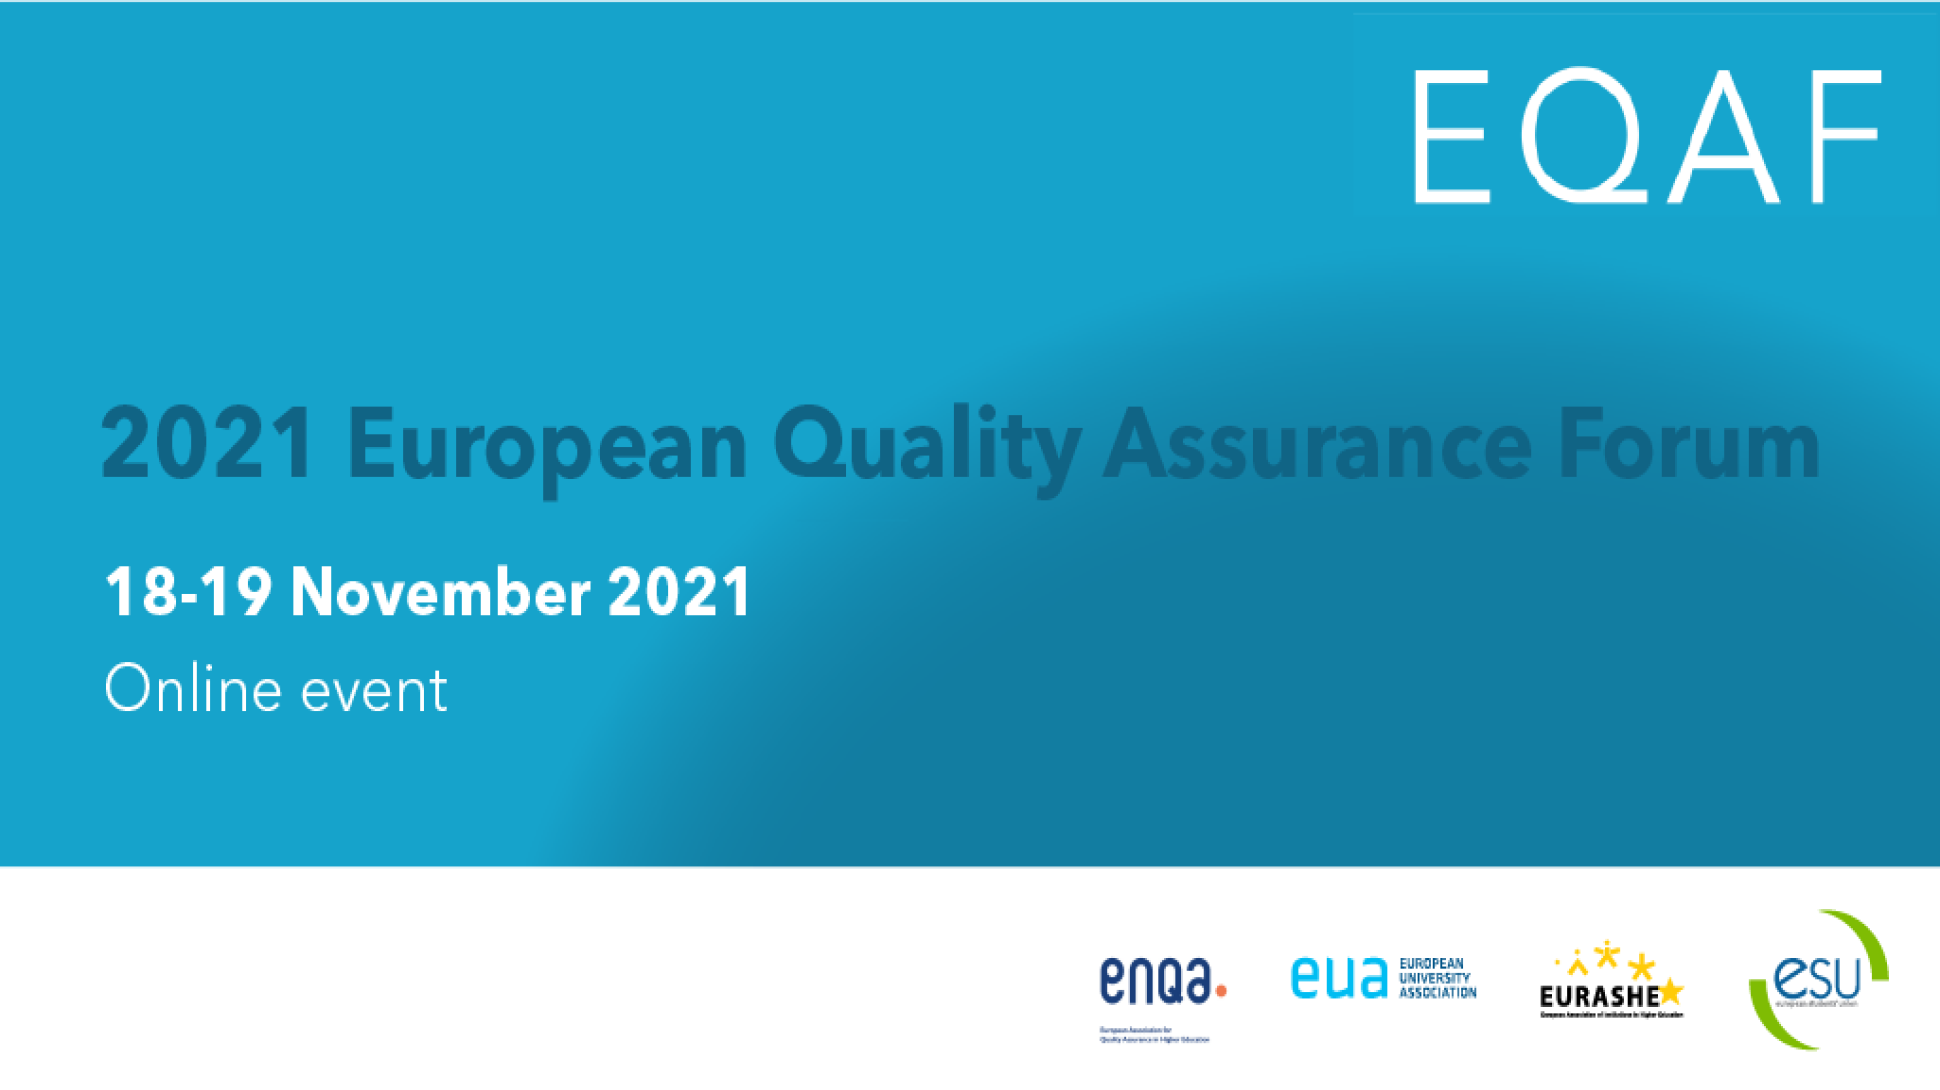 Zástupci UK aktivně vystoupili na European Quality Assurance Forum 2021